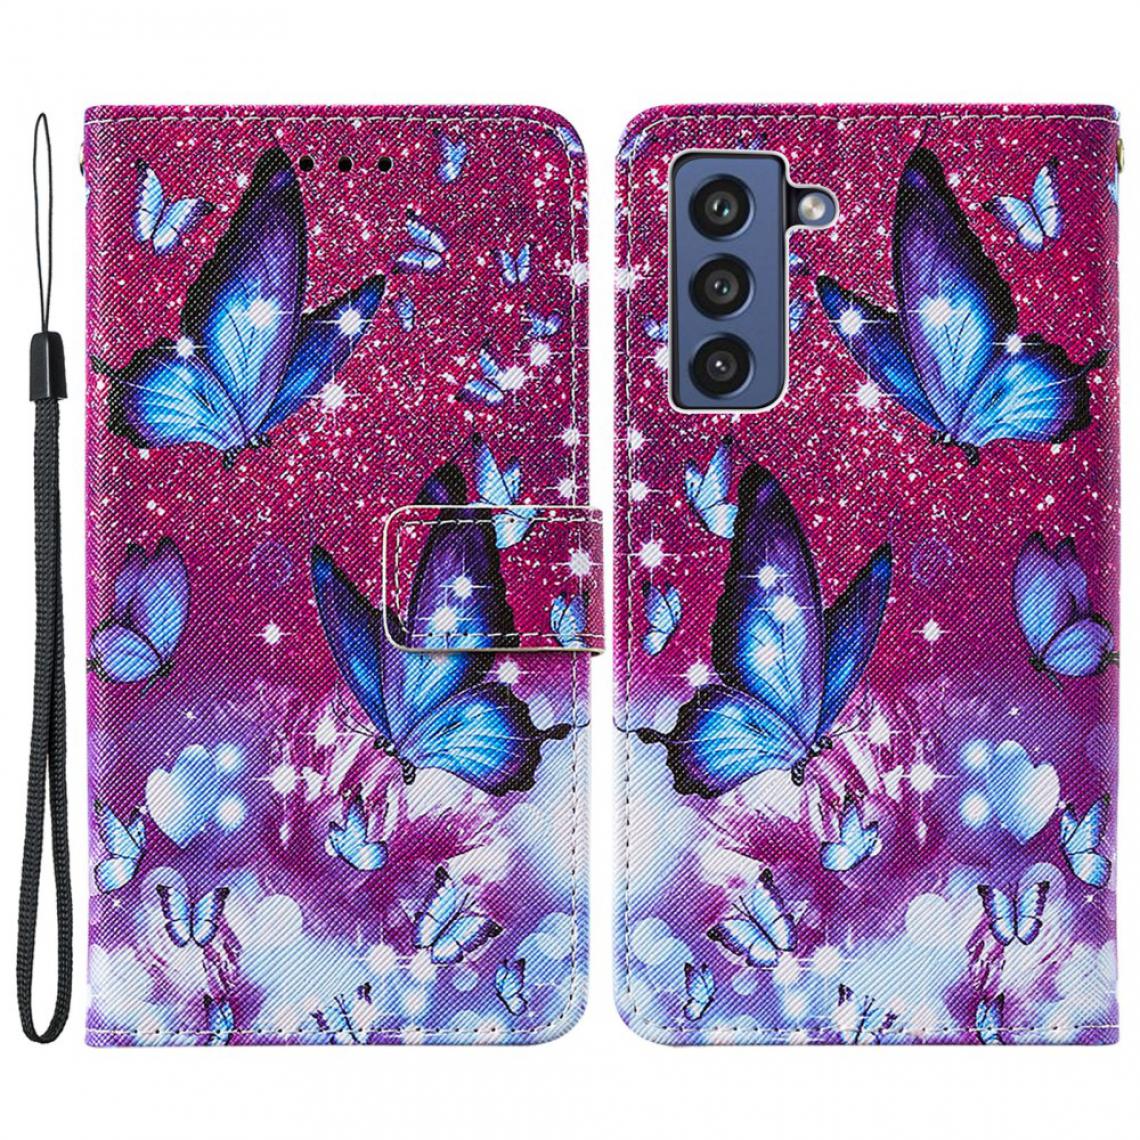 Other - Etui en PU Impression de motifs de texture croisée avec support papillon violet pour votre Samsung Galaxy S21 FE/S21 Fan Edition - Coque, étui smartphone